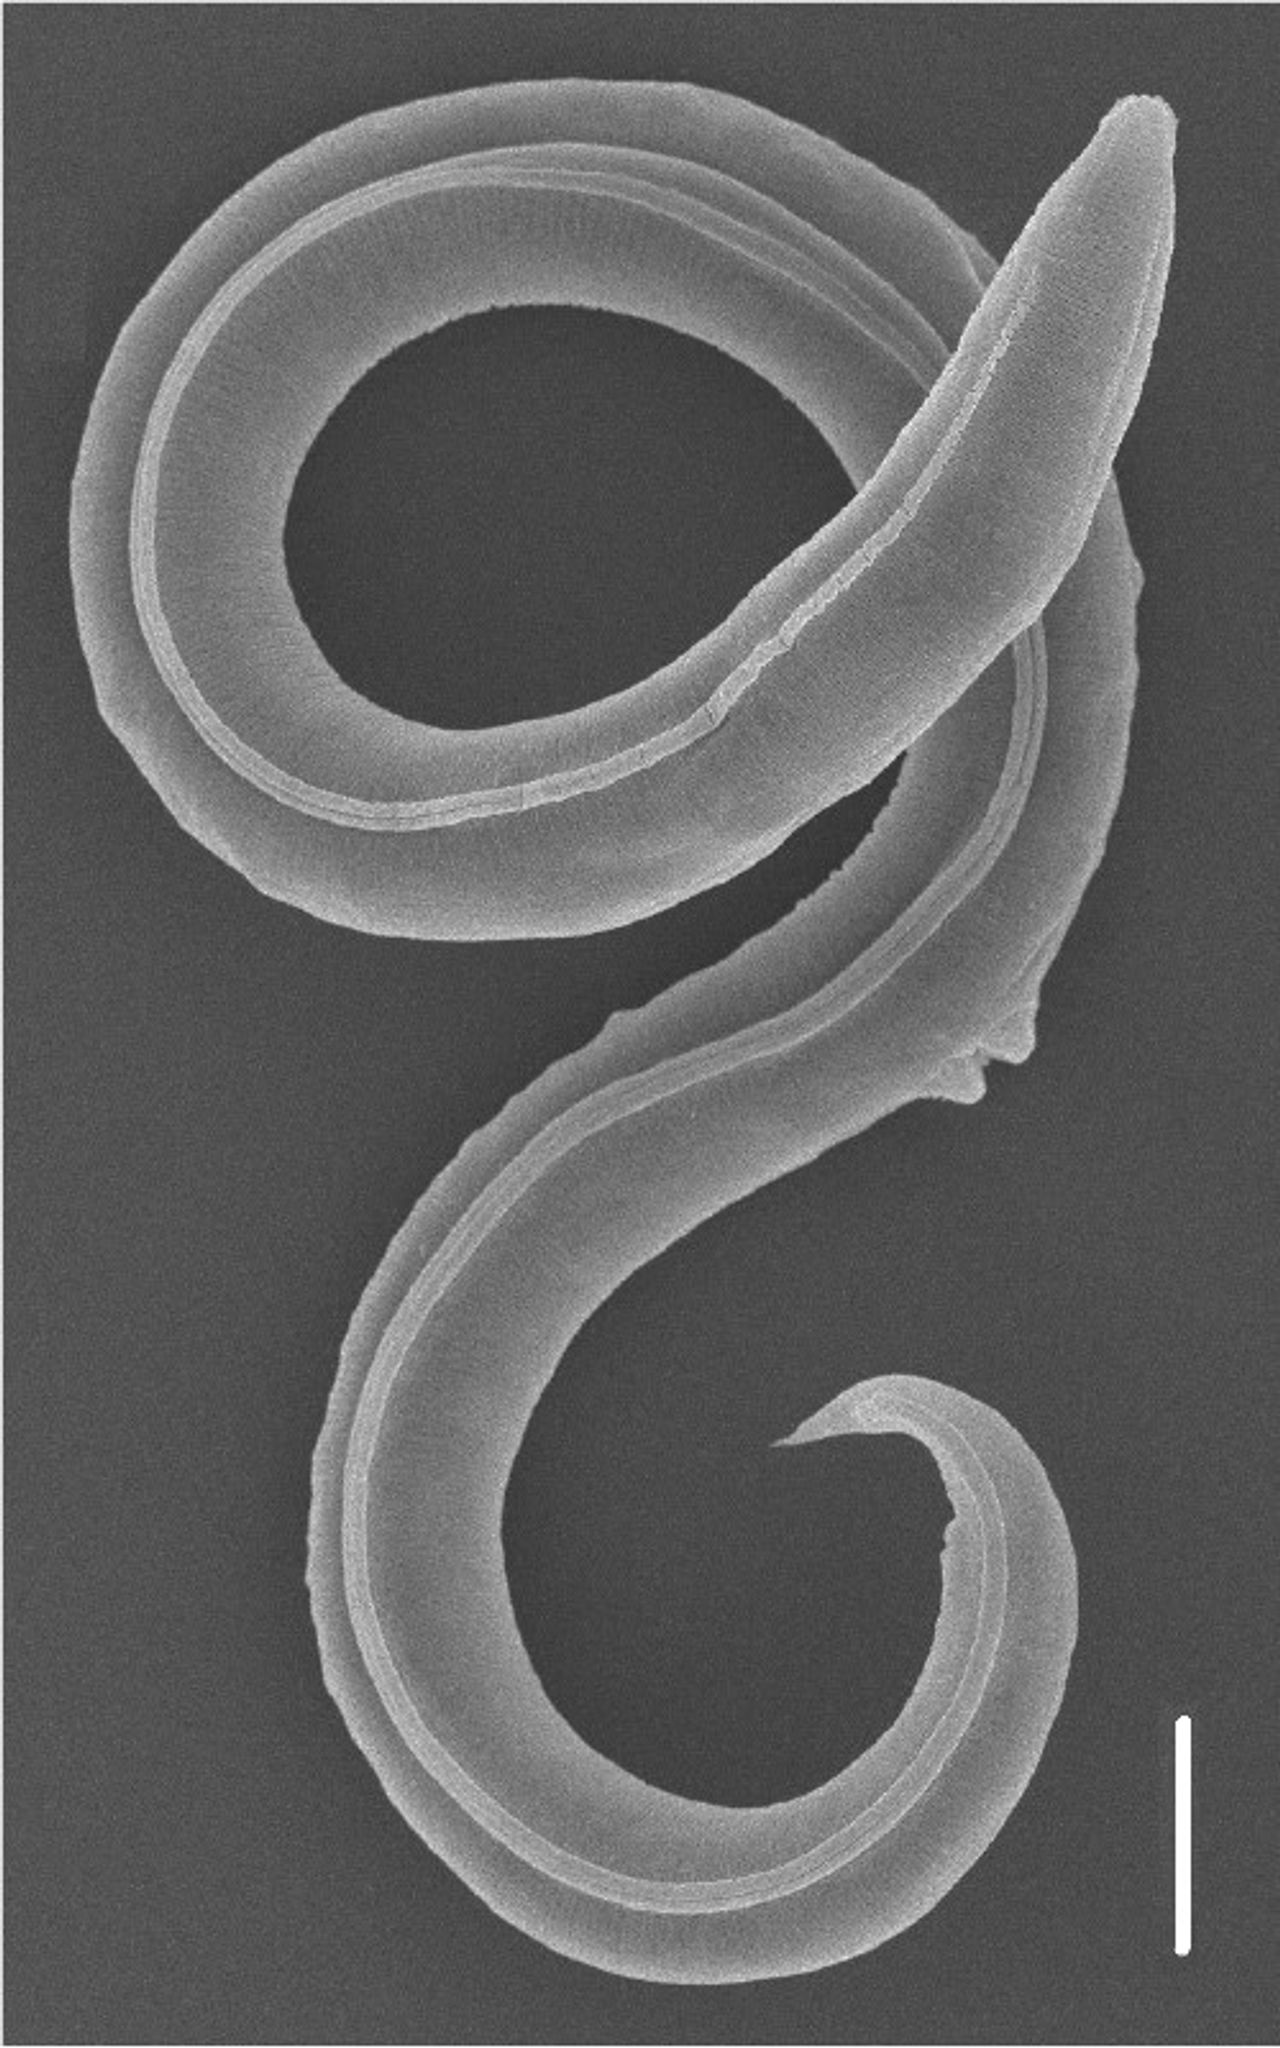 Ein Fadenwurm (Panagrolaimus kolymaensis, weiblich) auf einem Rasterelektronenbild.